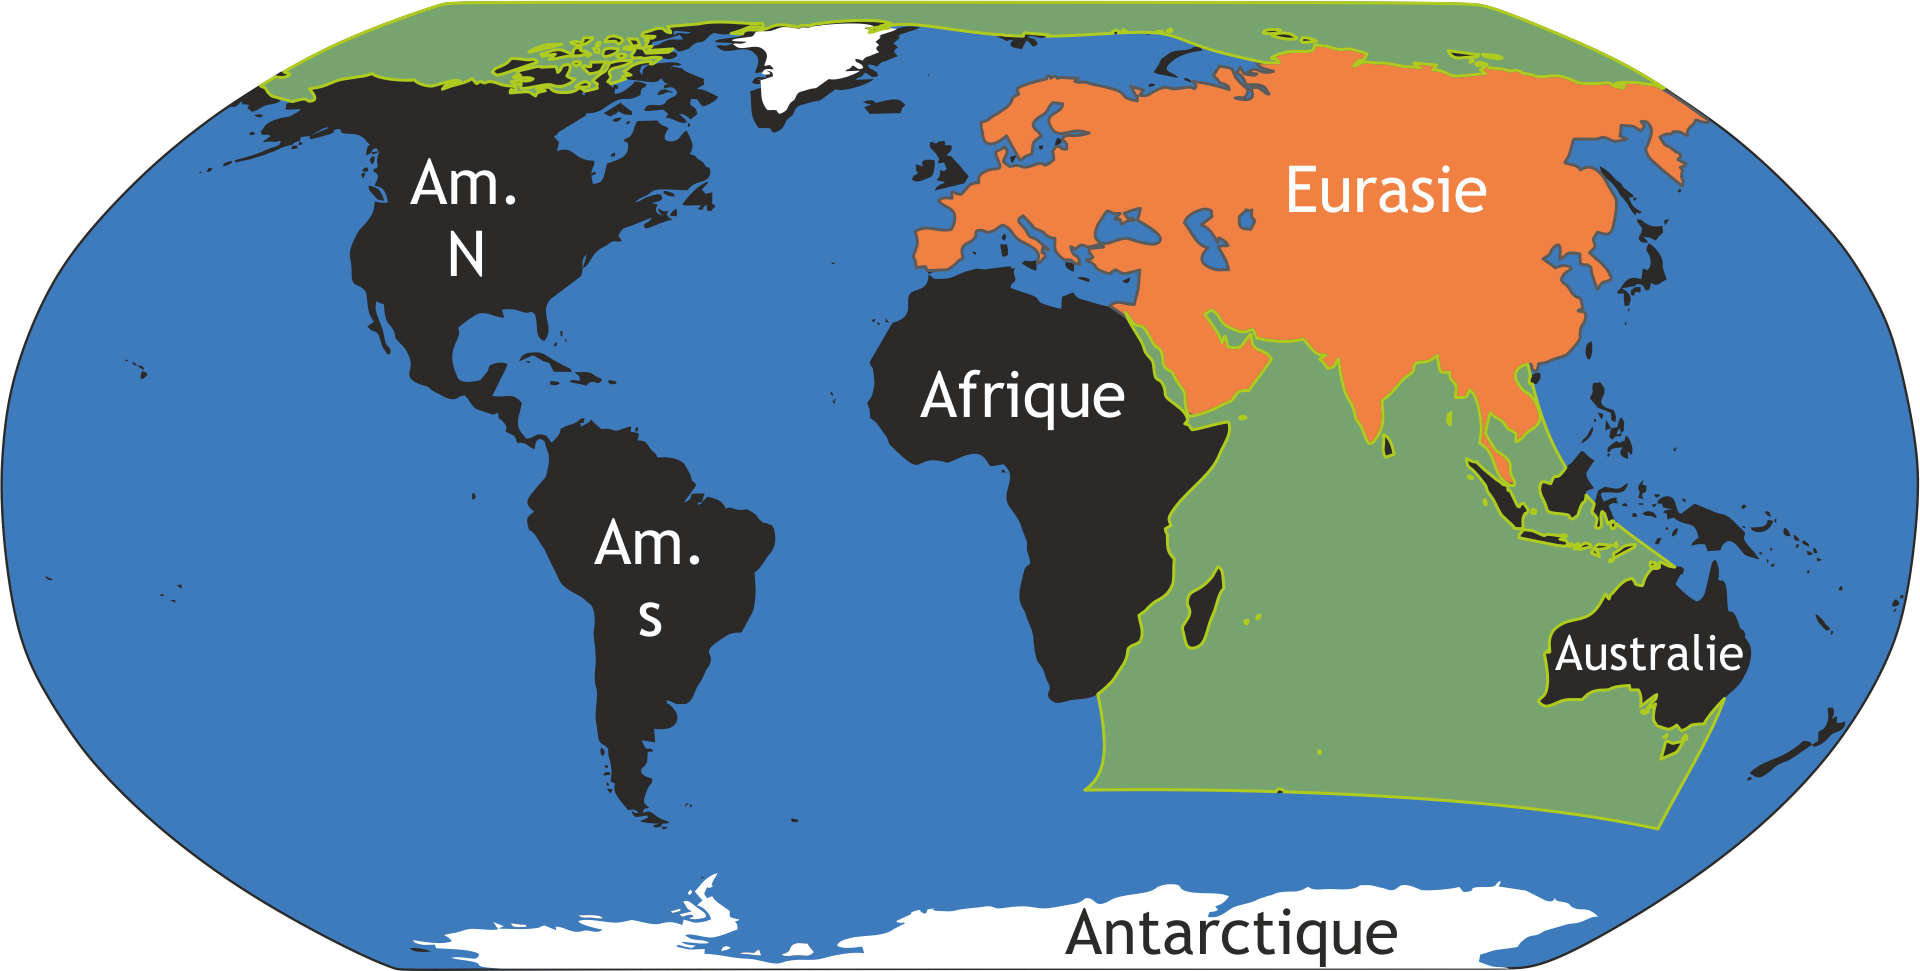 Océan Indien contraint au nord par l'Eurasie et donc empêchant la communication avec l'Arctique